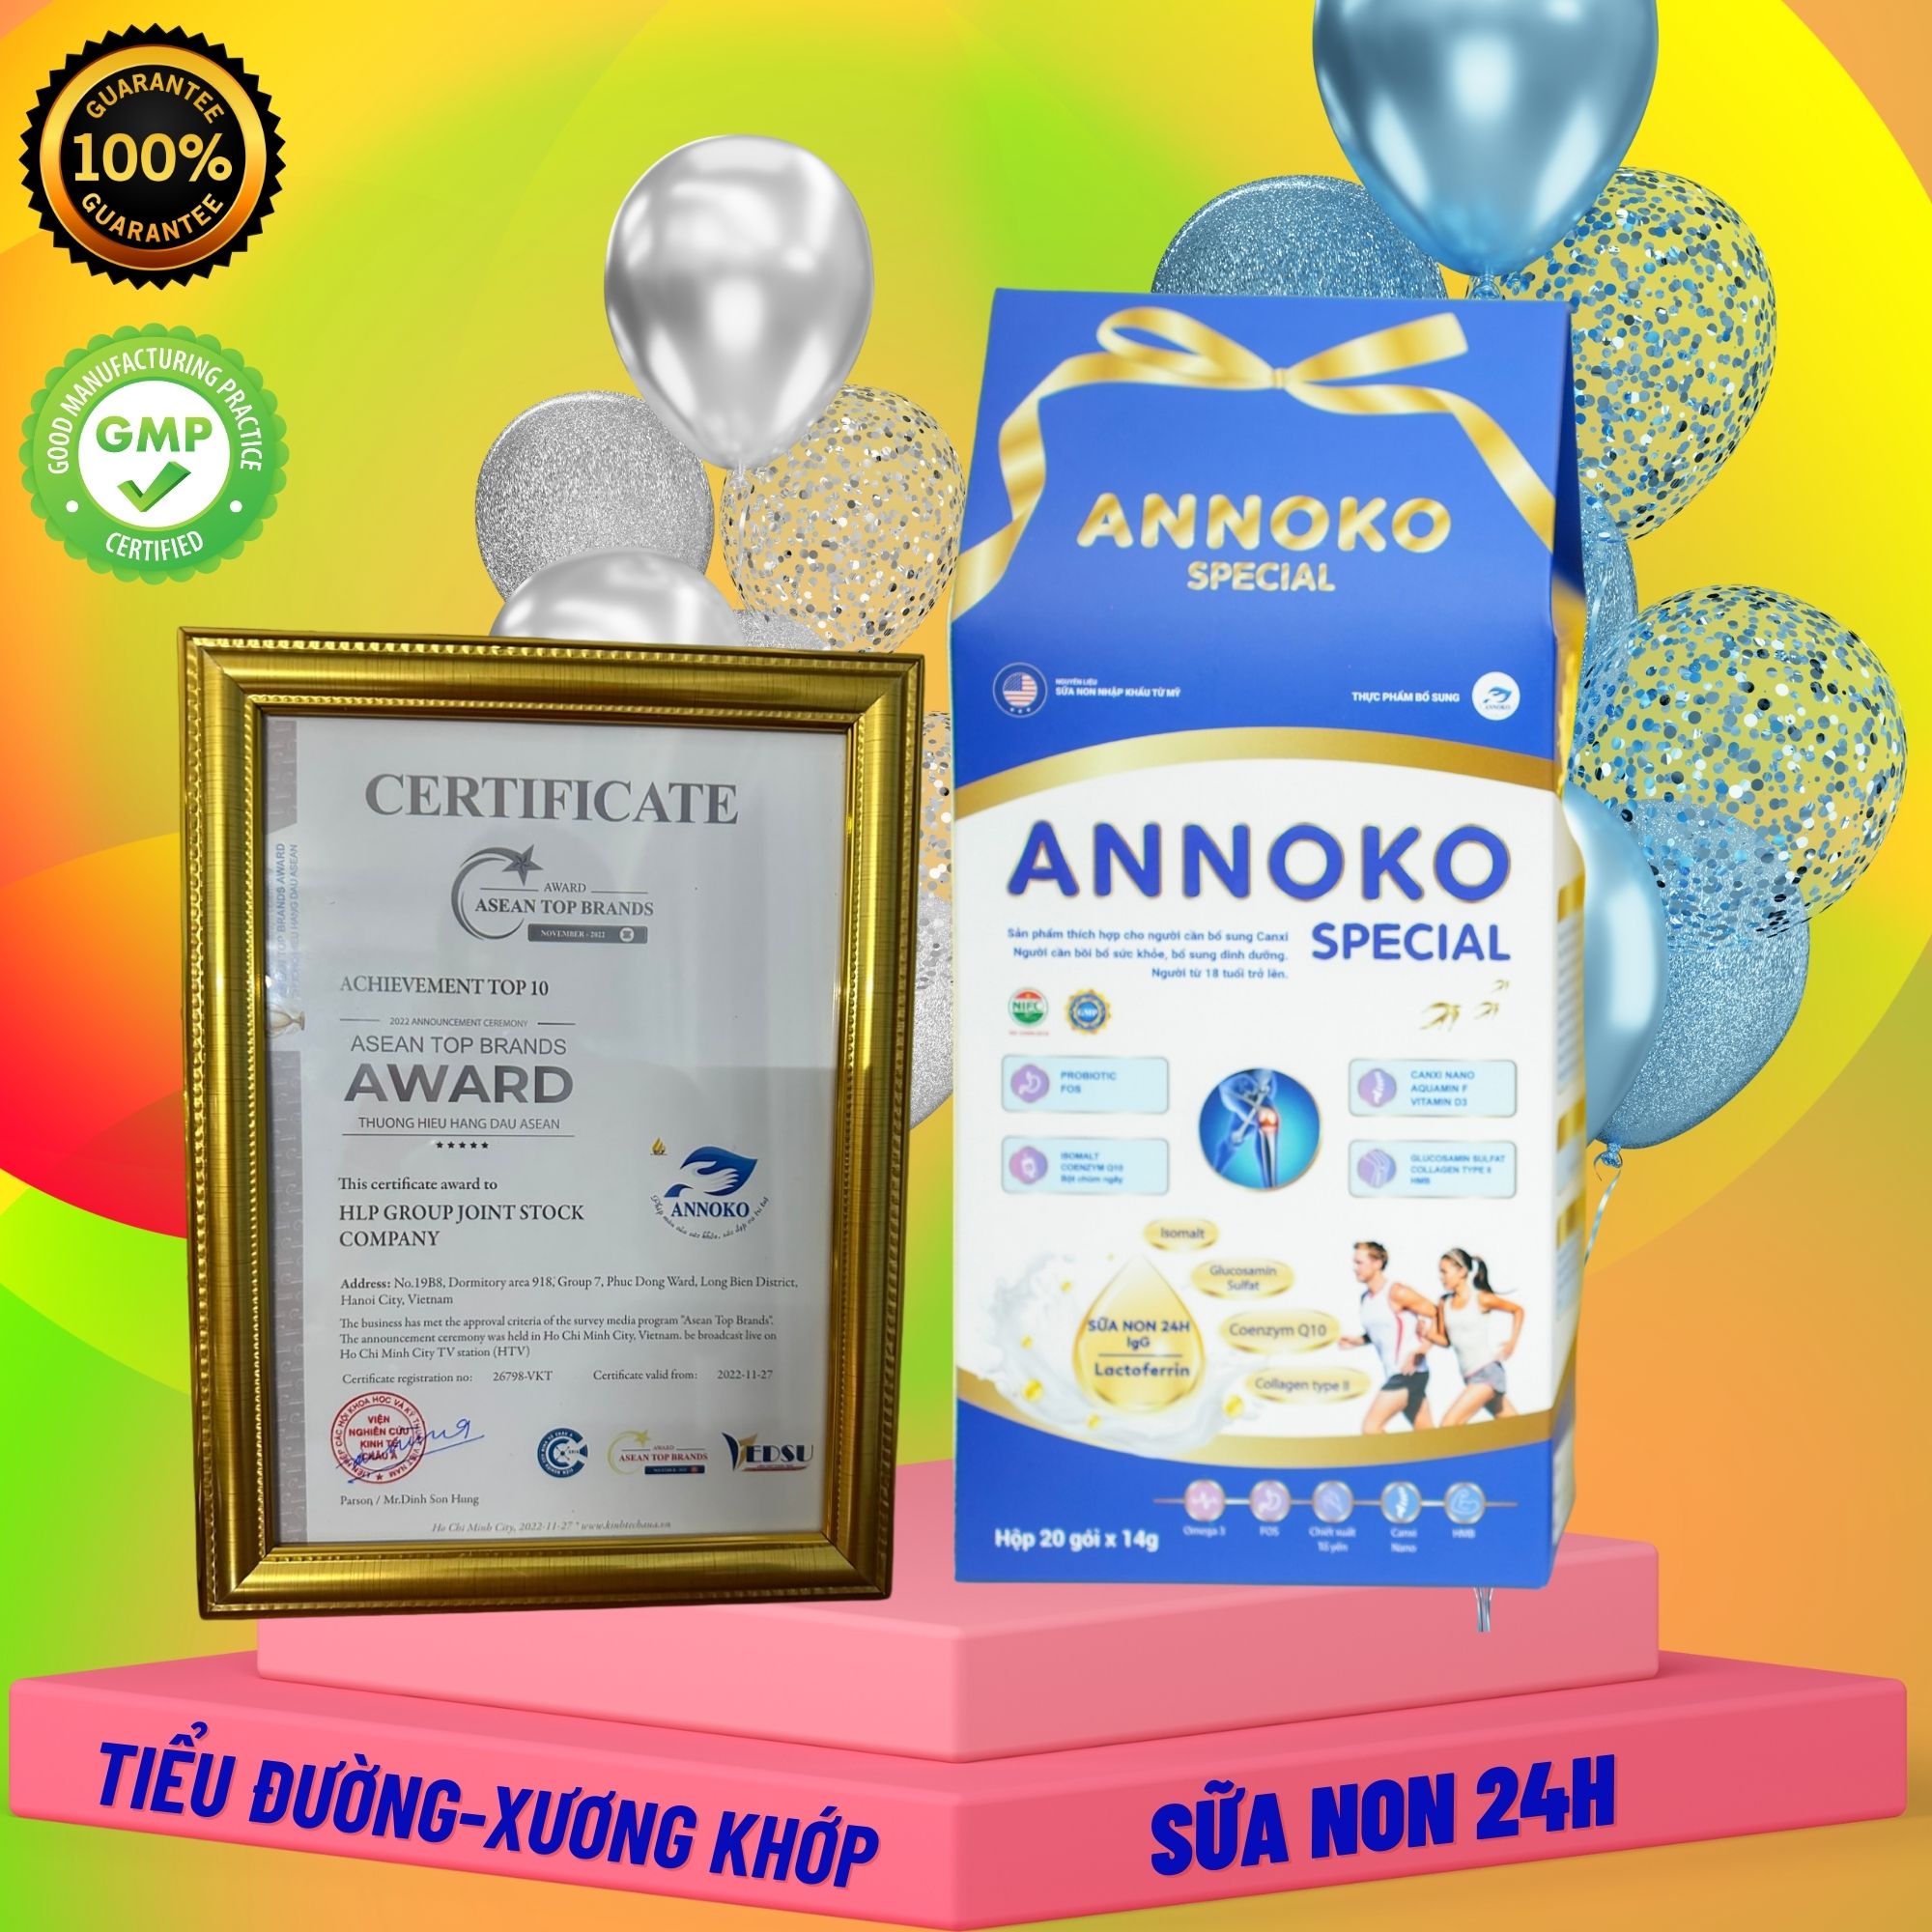 Sữa non 24H- ANNOKO SPECIAL dành cho phụ nữ sau sinh thiếu canxi